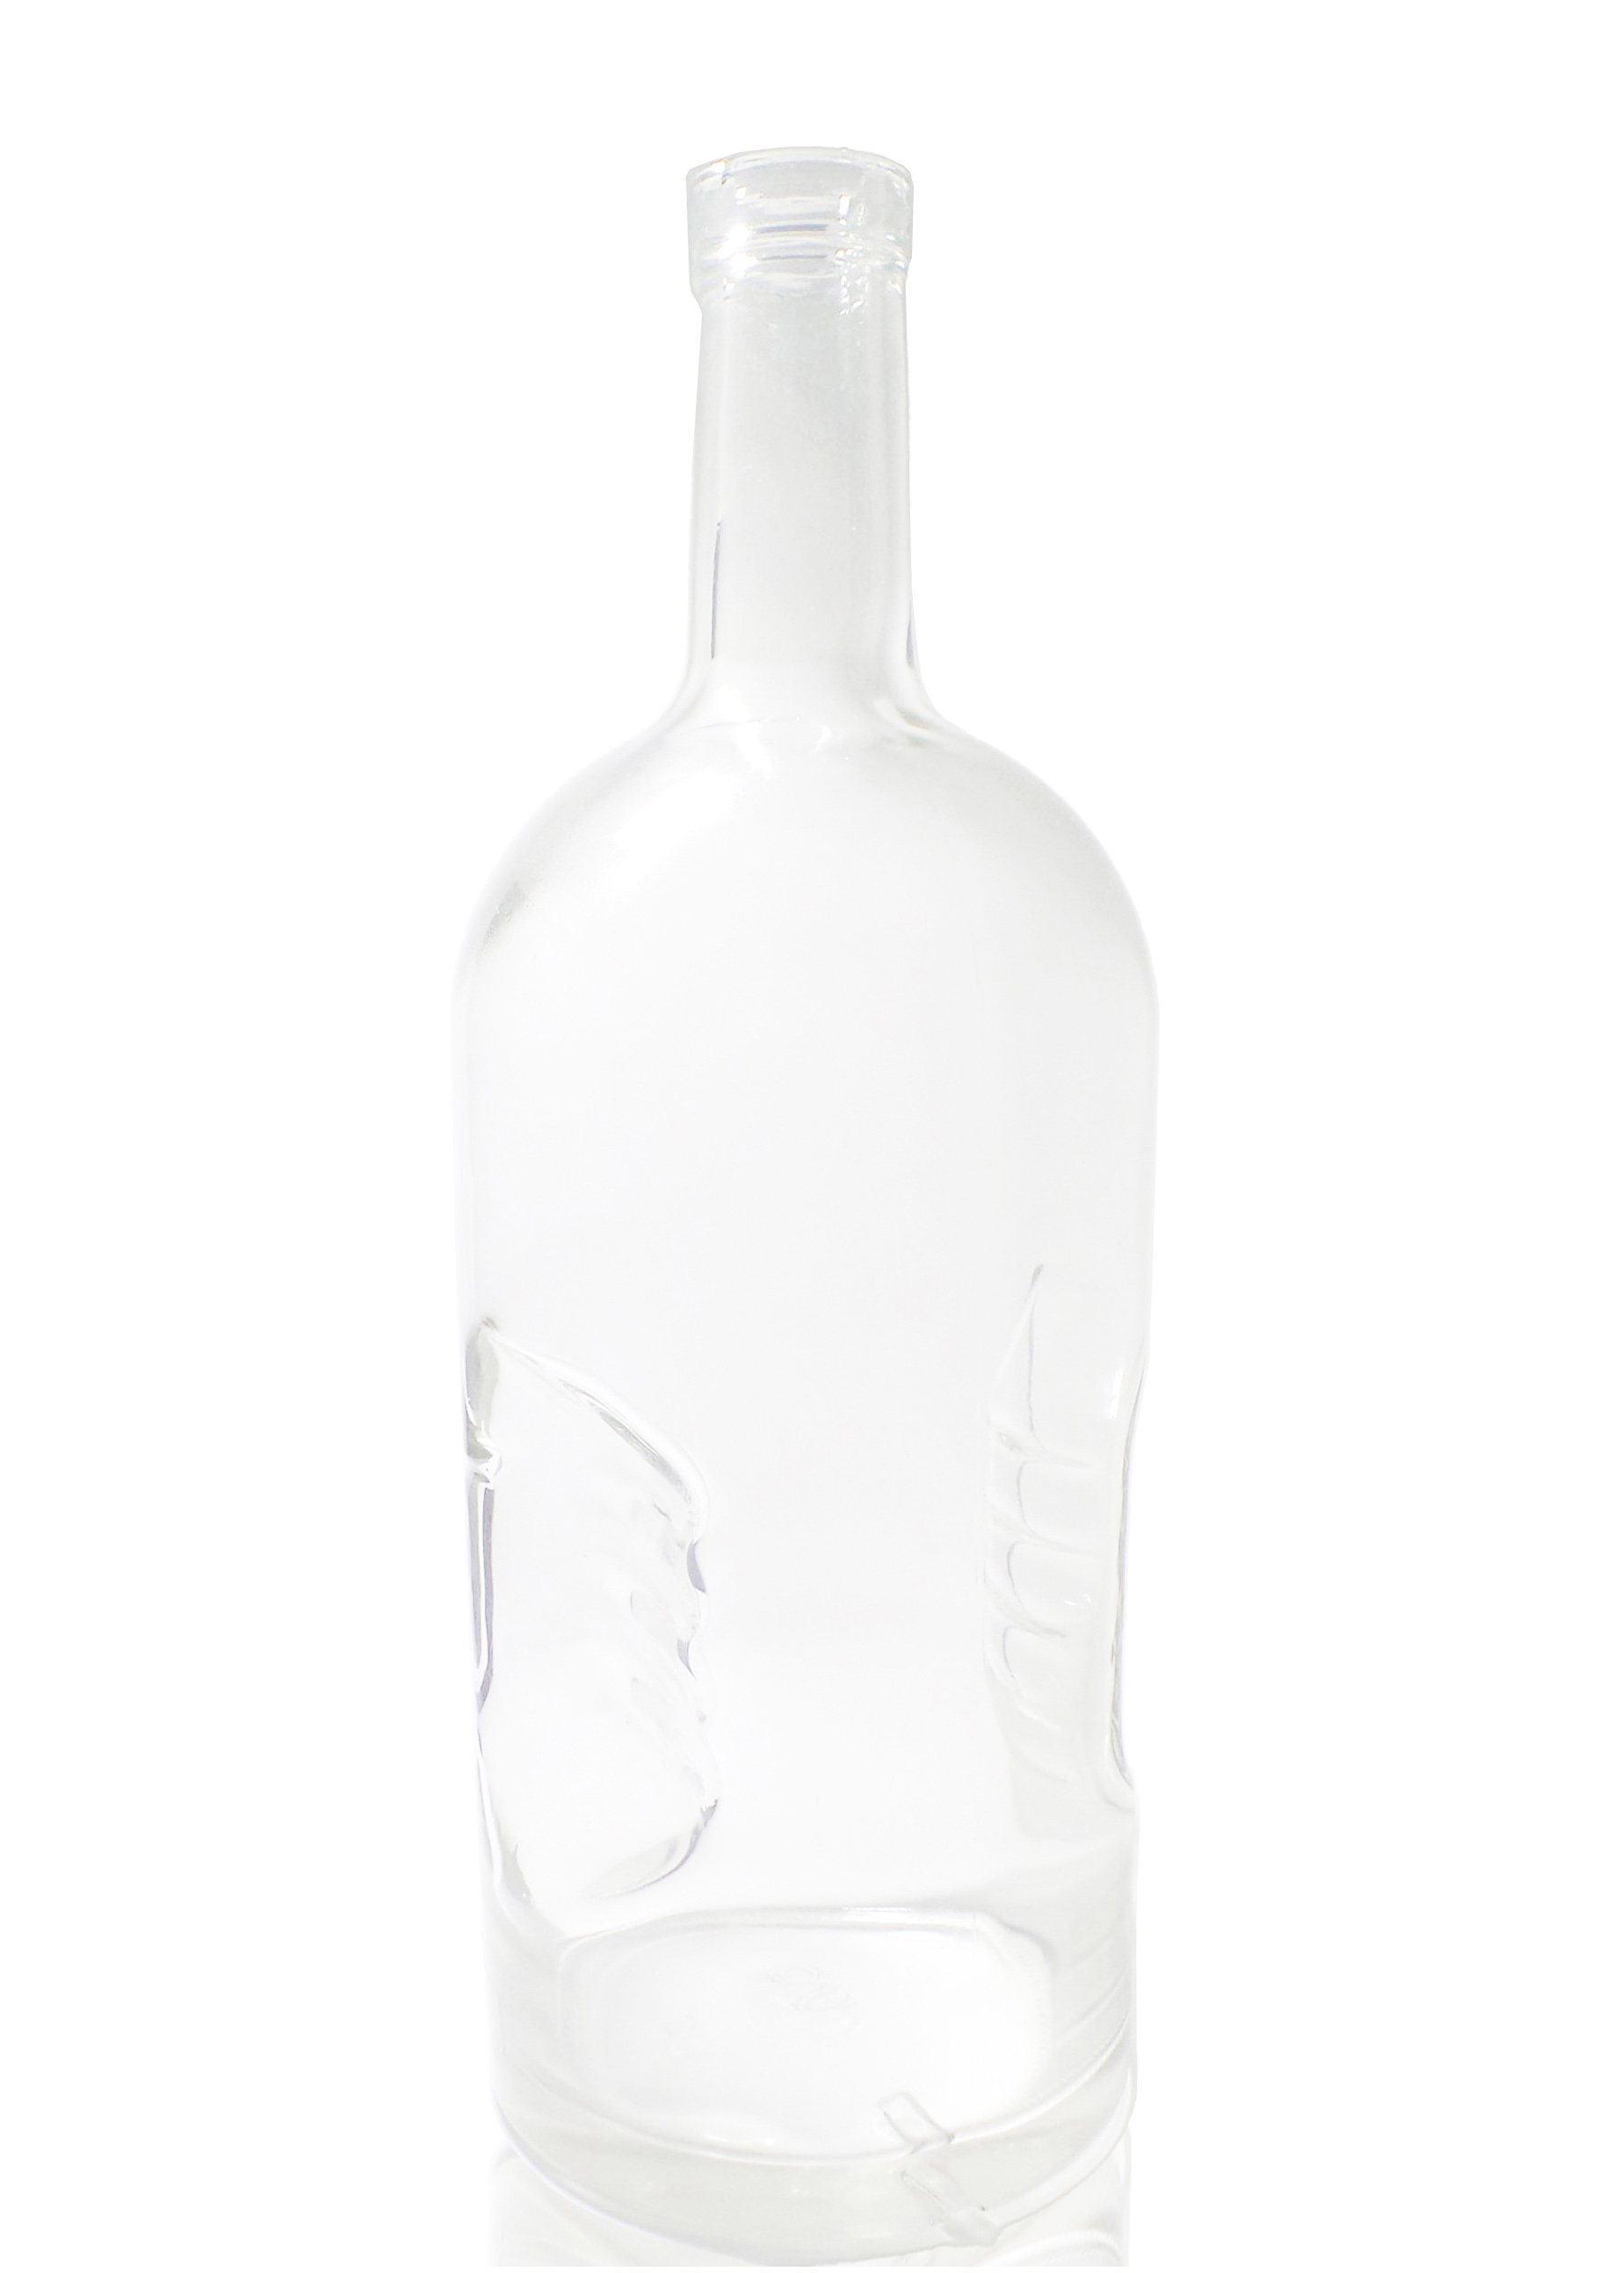 whisky bottle Liquor glass bottle 1750ml Rum and Dry Gin bottles 